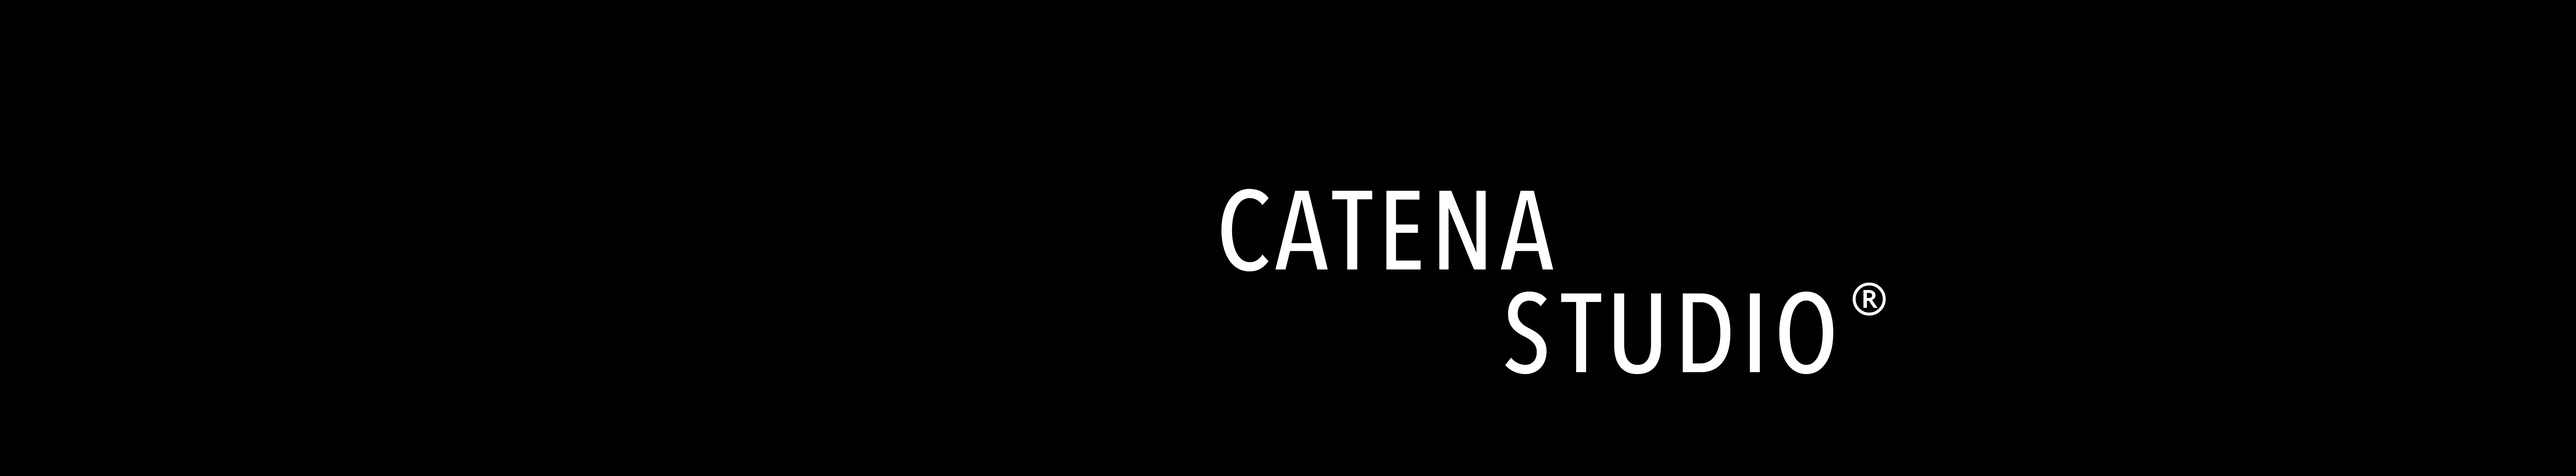 Catena Studio's profile banner